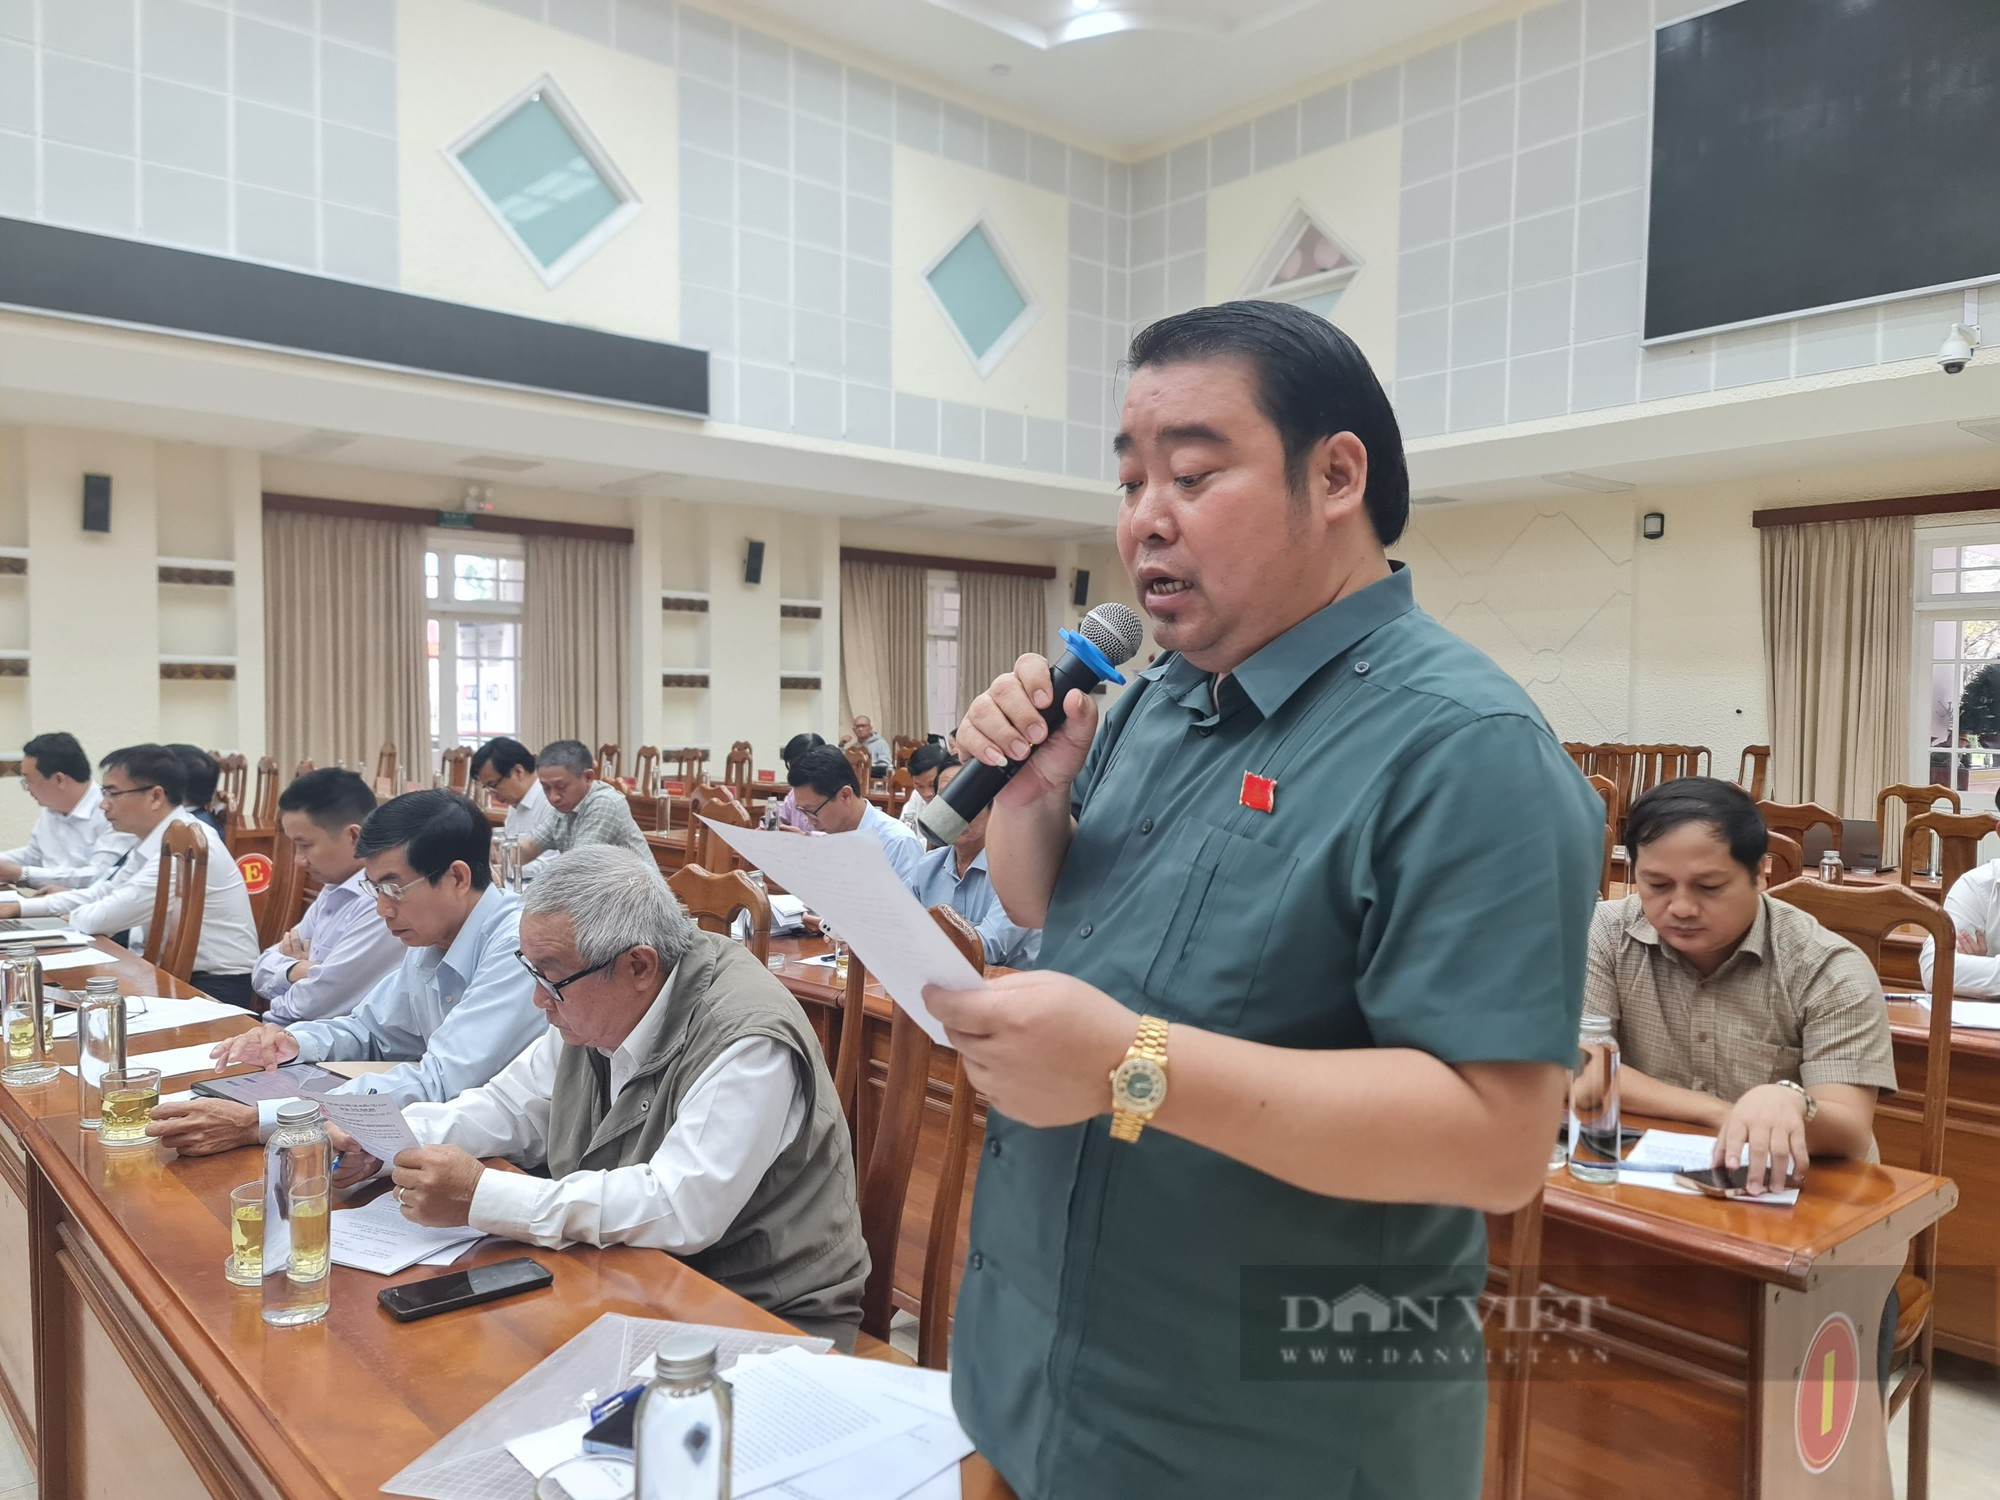 Đại biểu Nguyễn Viết Dũng vắng mặt tại kỳ họp thứ 13, HĐND Quảng Nam - Ảnh 2.